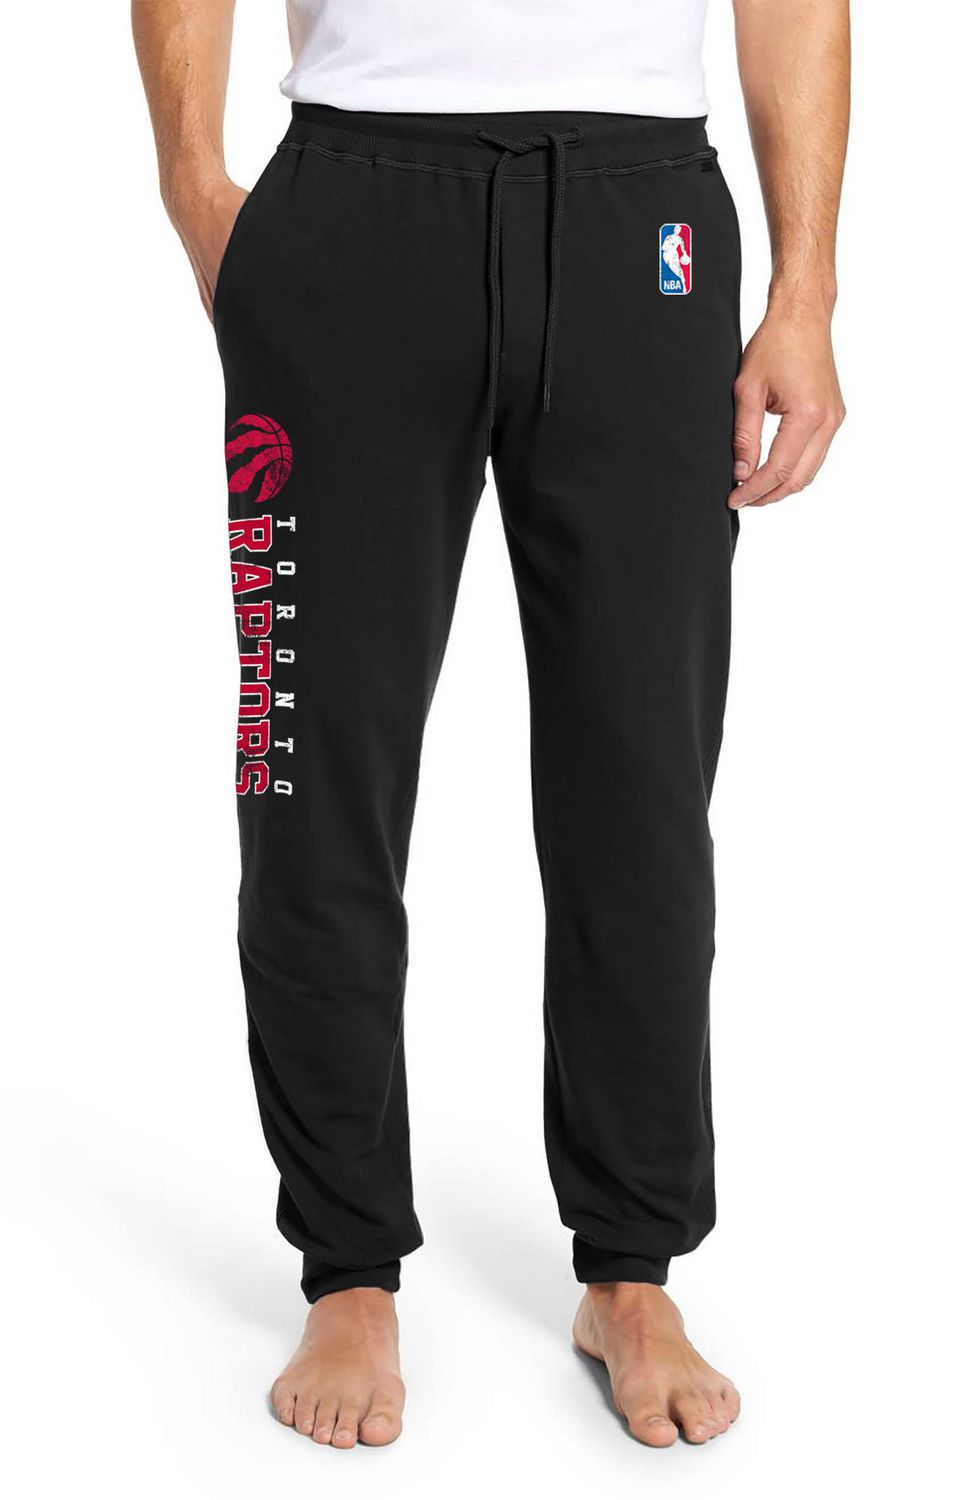 Toronto Raptors Side printMen's Lounge pants 